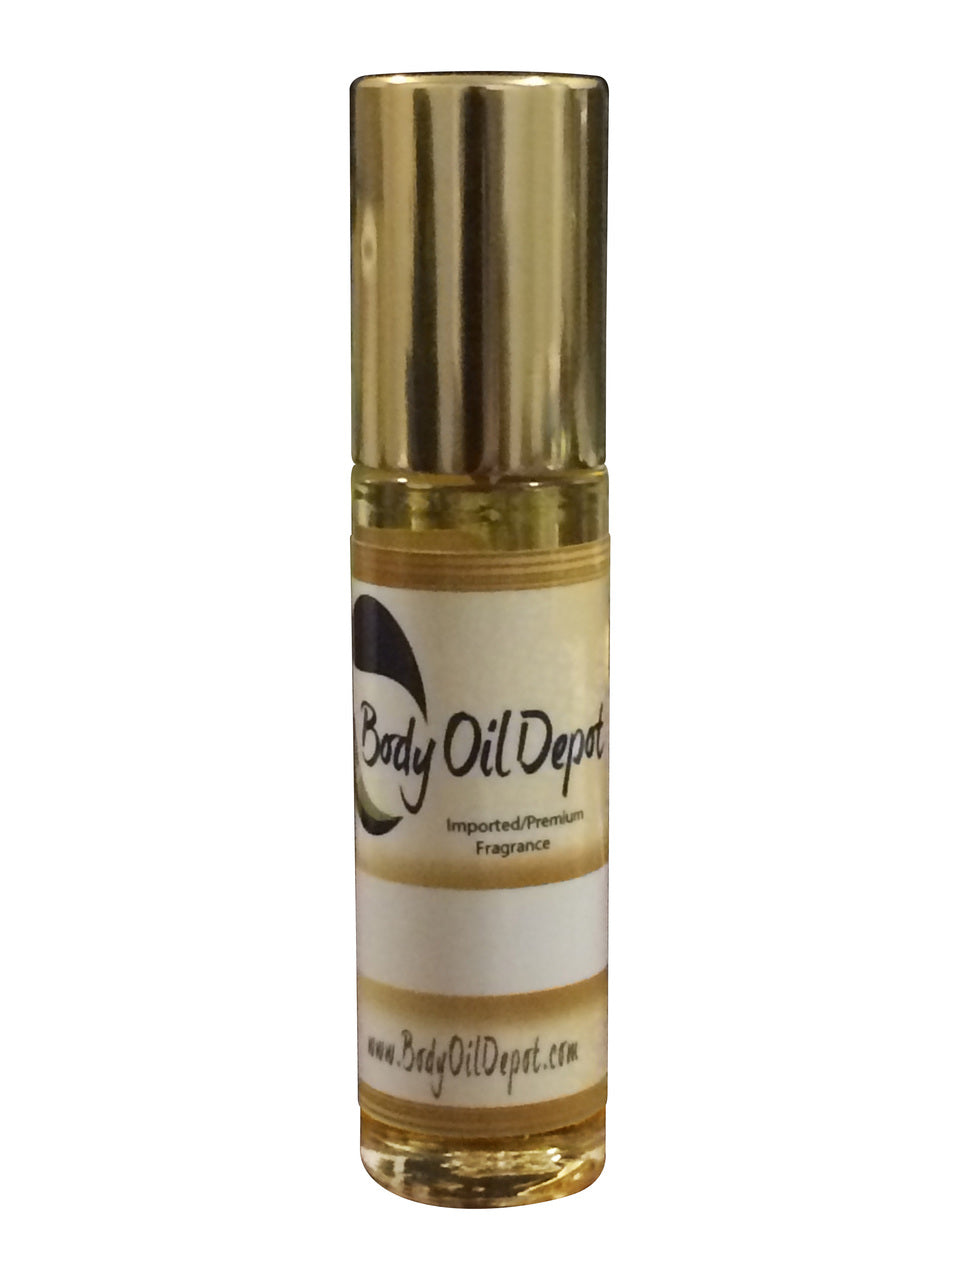 Amberwood Type (U) - Premium Concentrated Parfum Oil